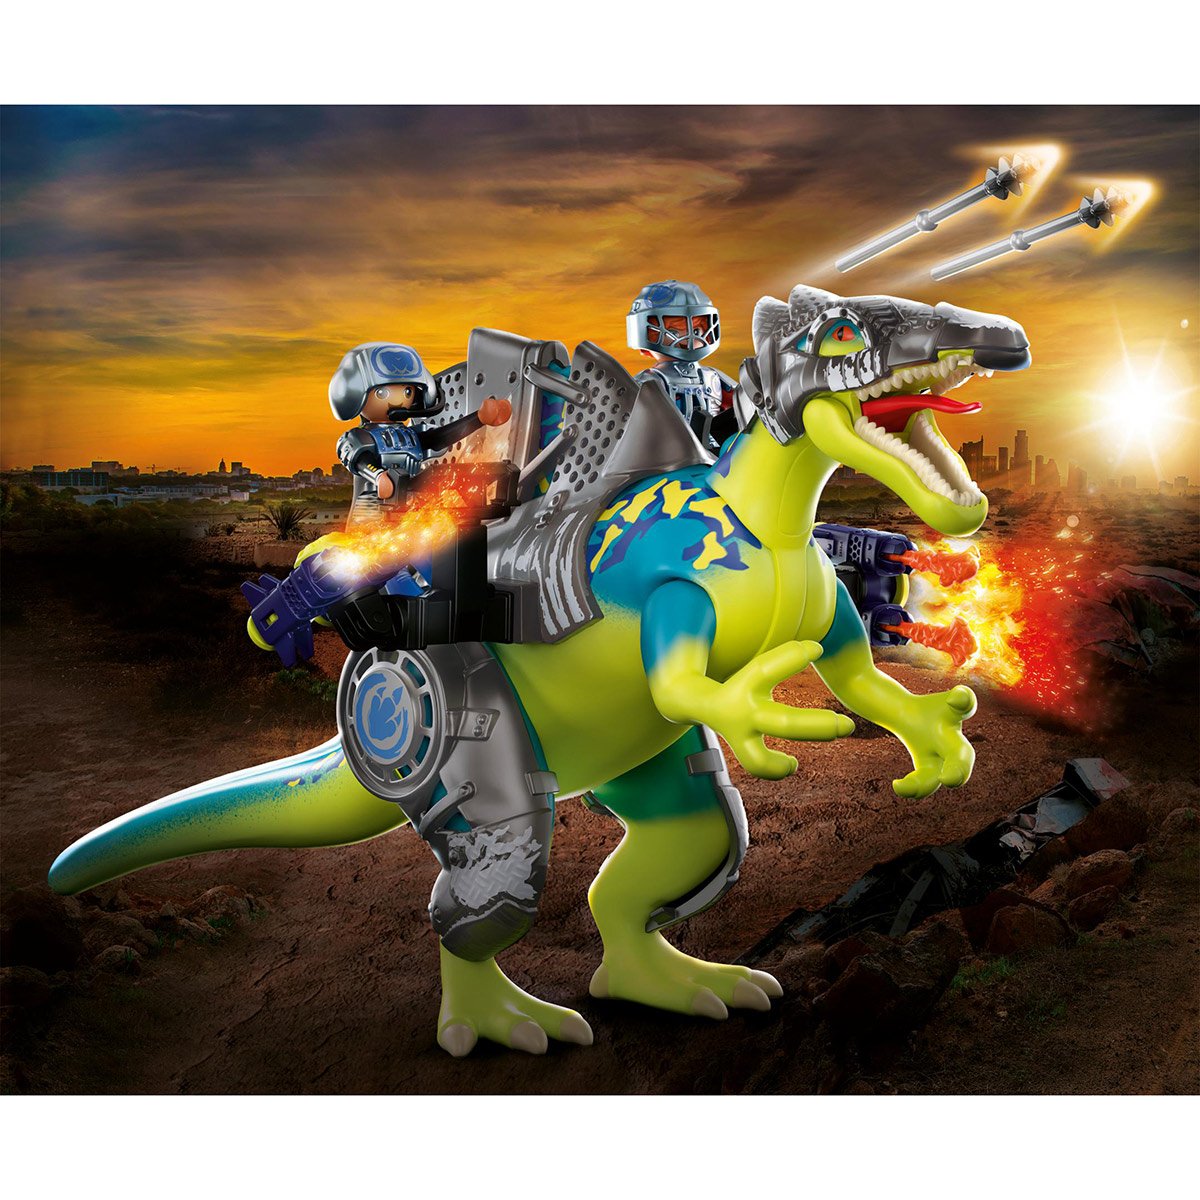 Tricératops et soldats Playmobil Dino Rise 71262 - La Grande Récré